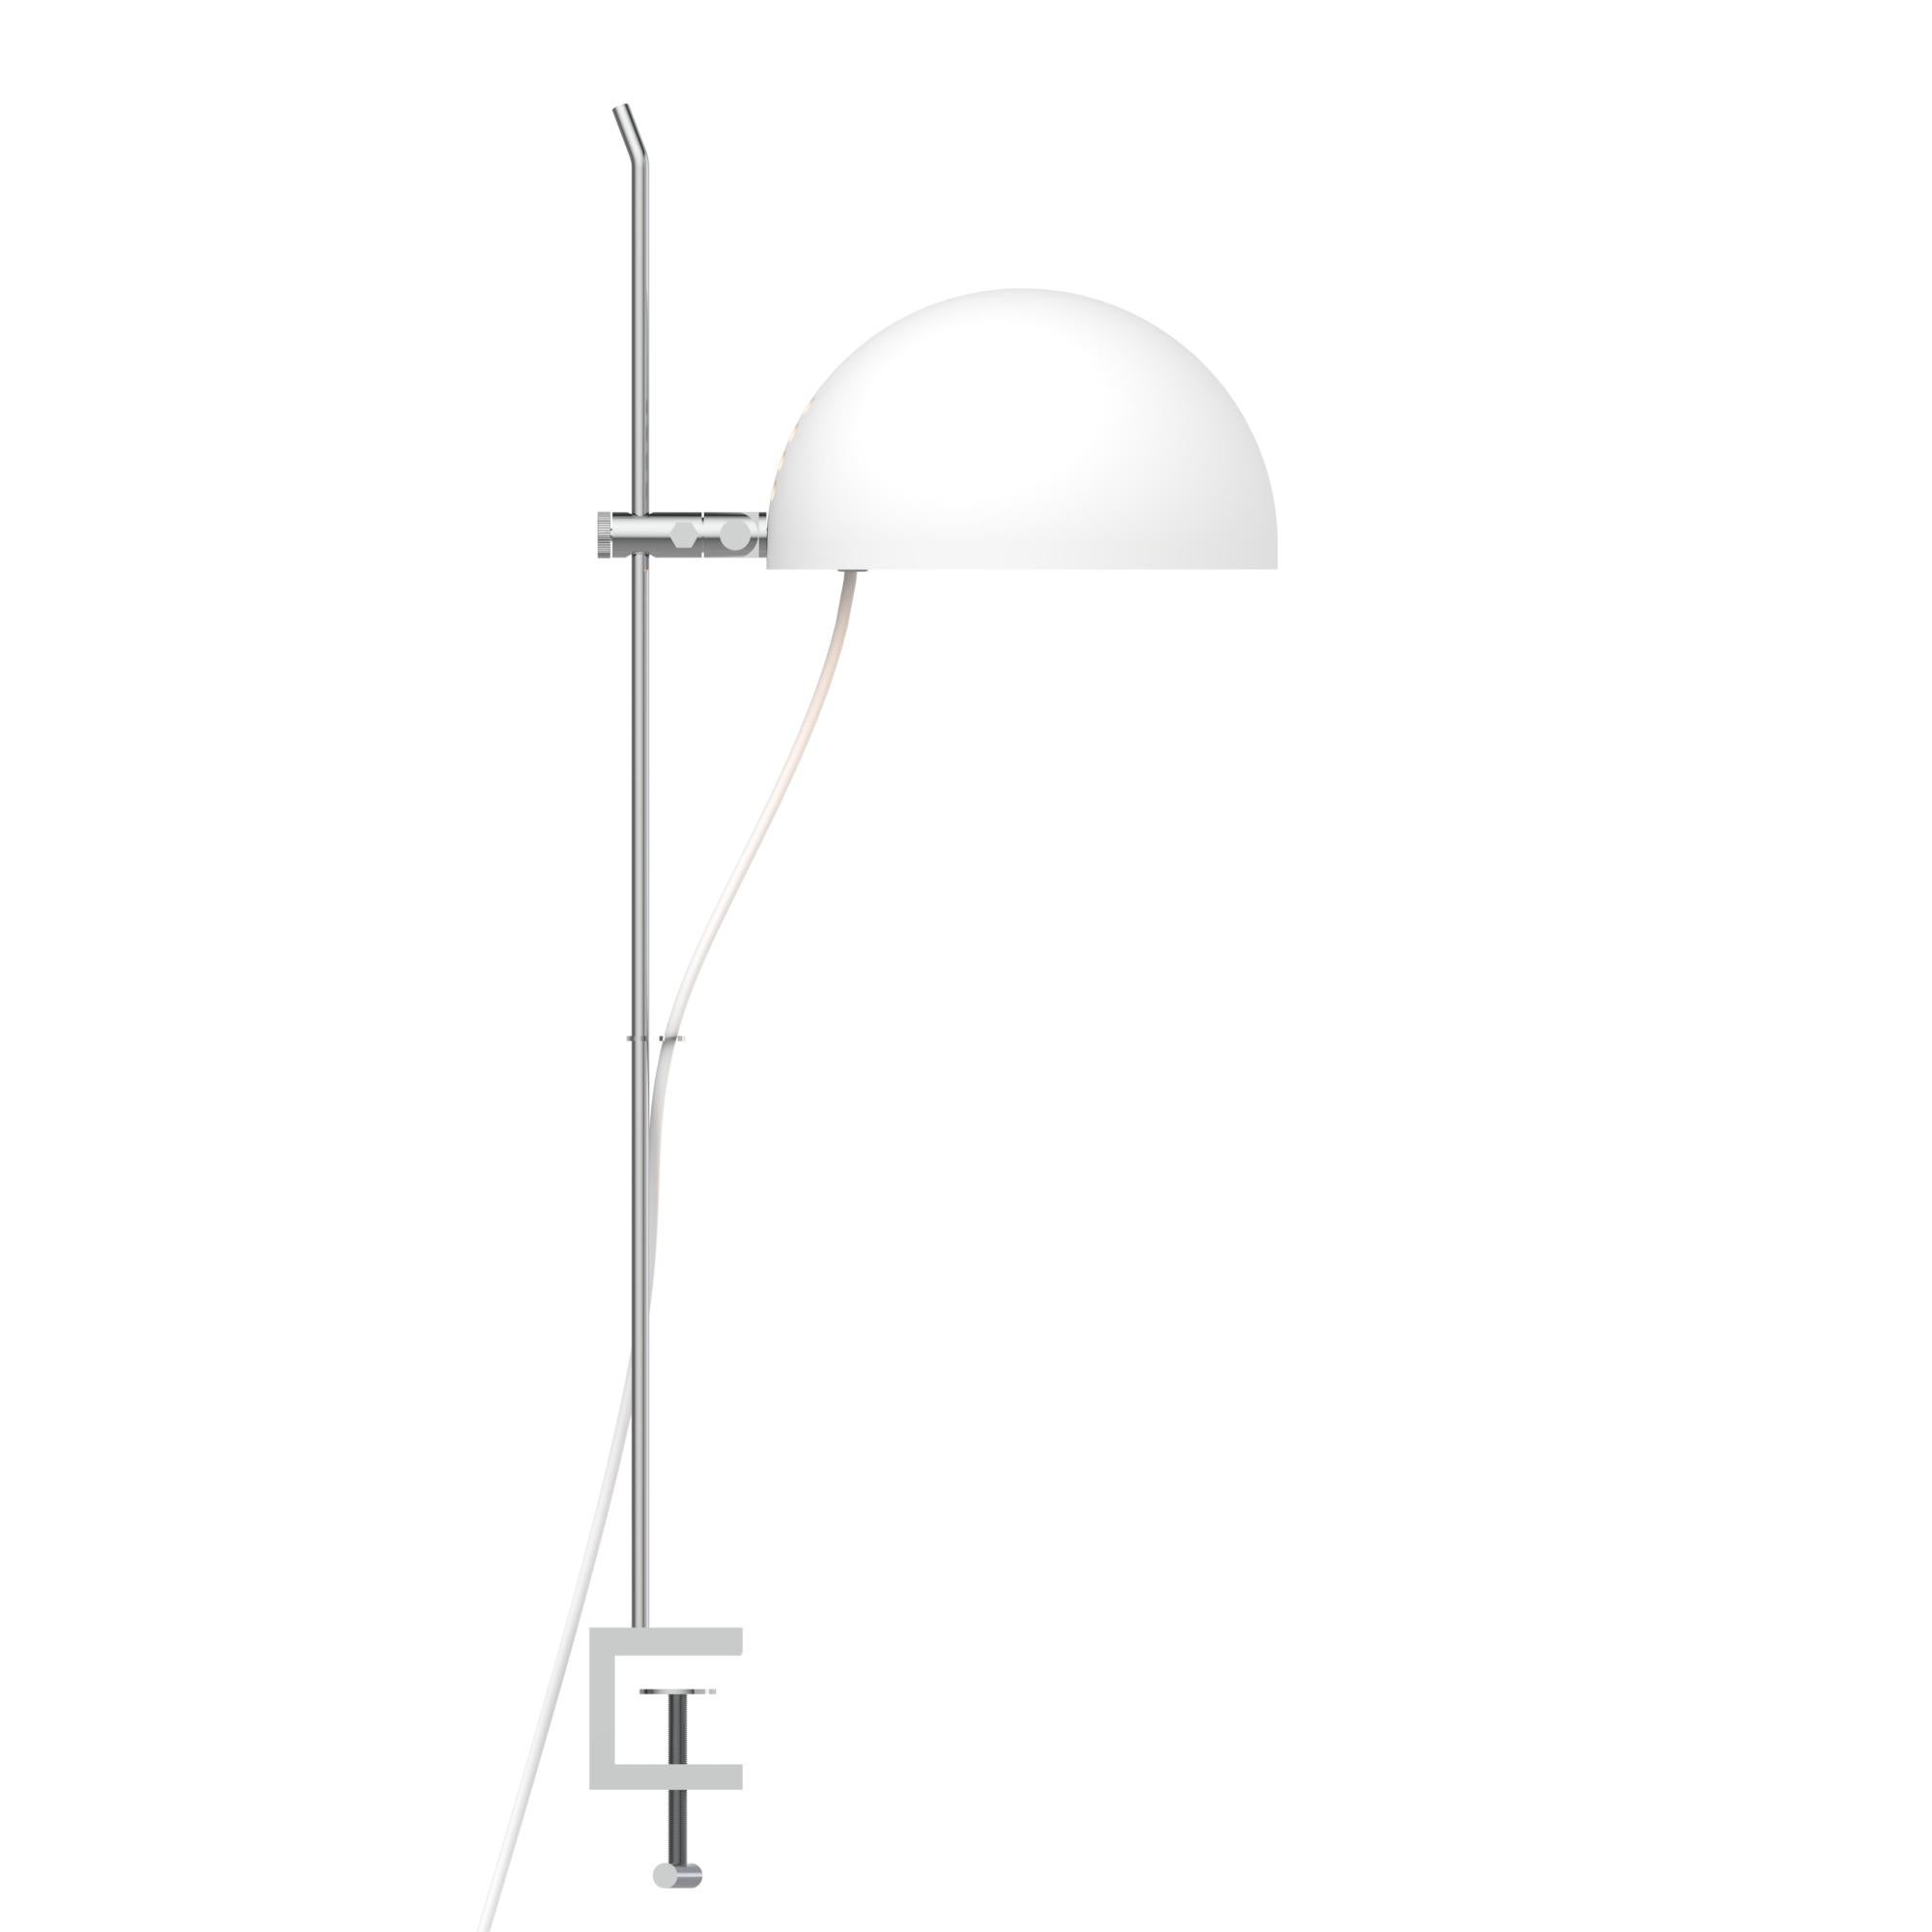 Alain Richard 'A22f' Task Lamp in Chrome for Disderot For Sale 2